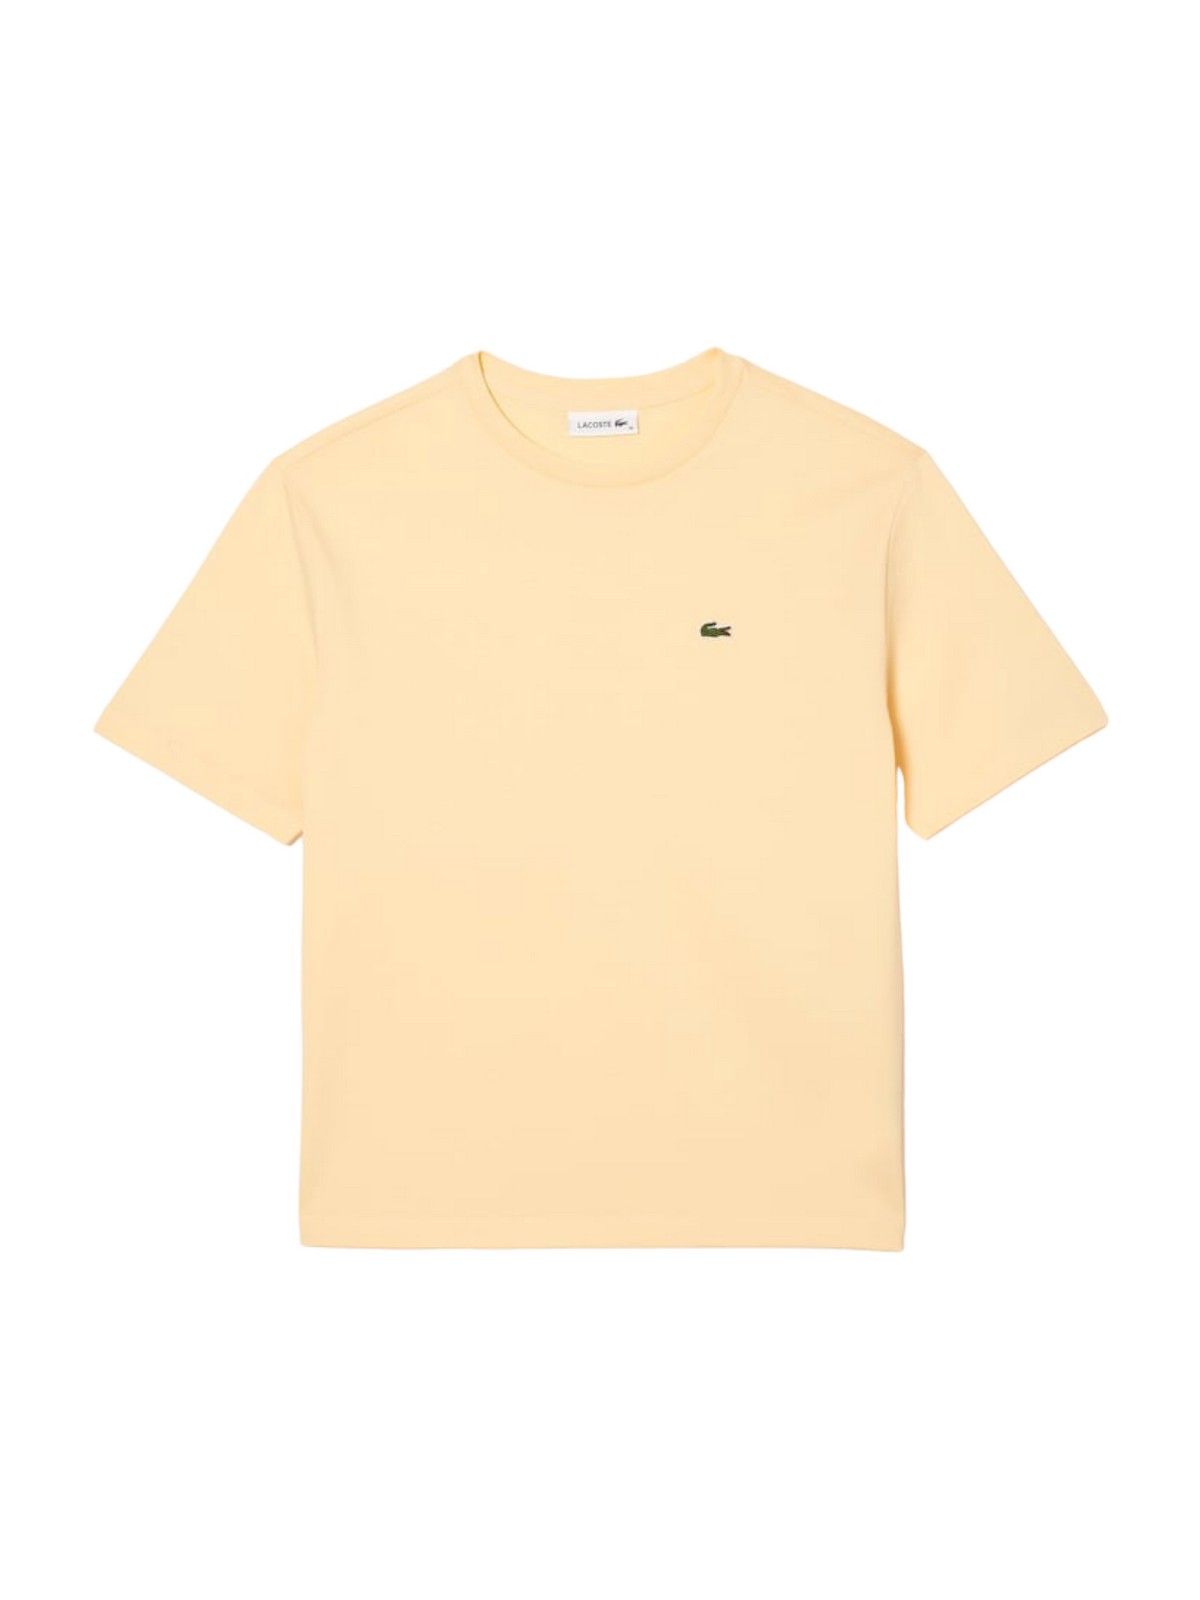 LACOSTE T-Shirt e Polo Donna  TF5441 XB8 Giallo